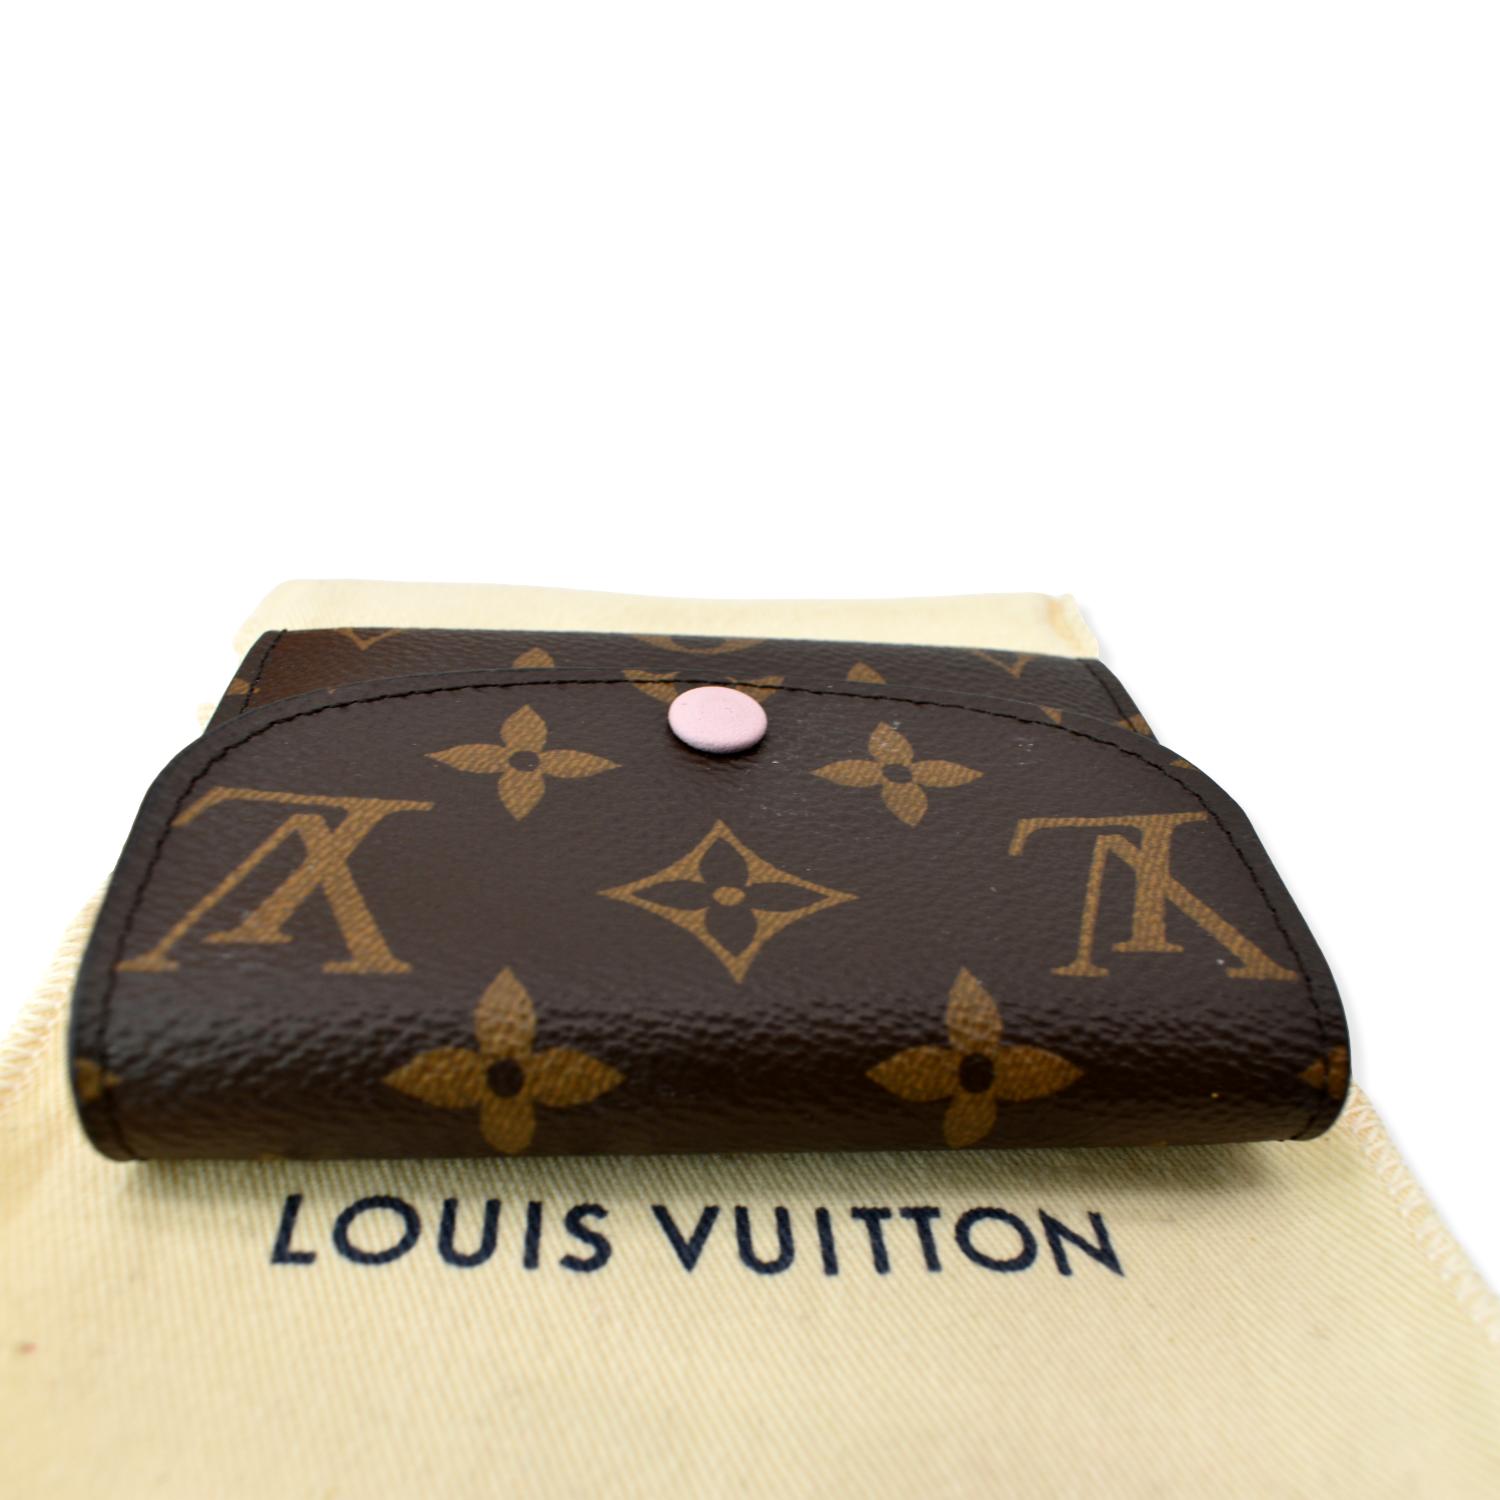 At Auction: Louis Vuitton, Louis Vuitton Rose Ballerine Vivienne Long Wallet